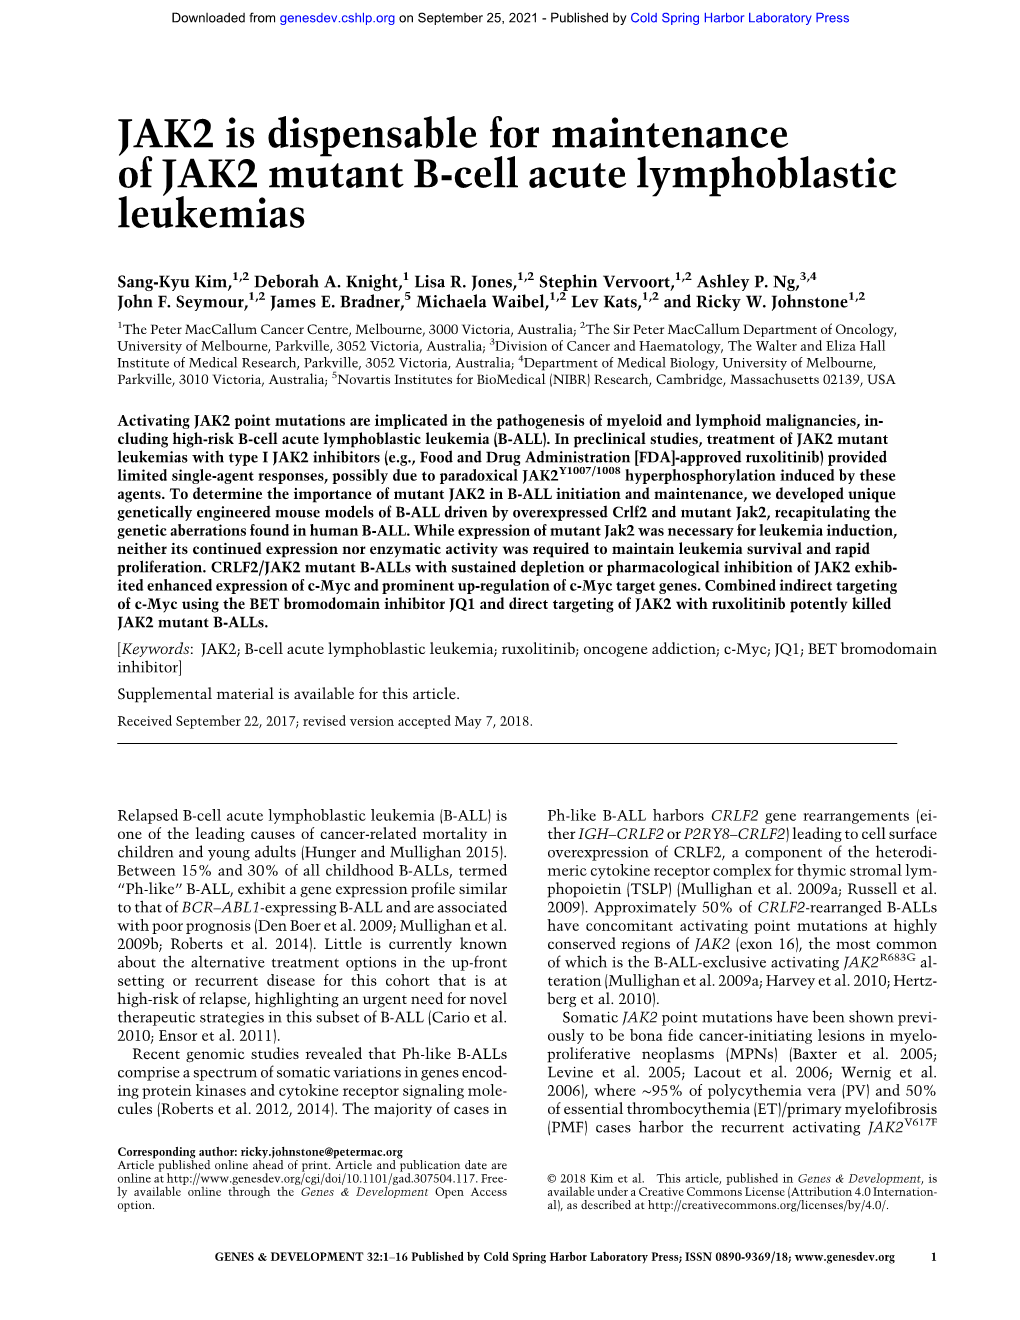 JAK2 Is Dispensable for Maintenance of JAK2 Mutant B-Cell Acute Lymphoblastic Leukemias